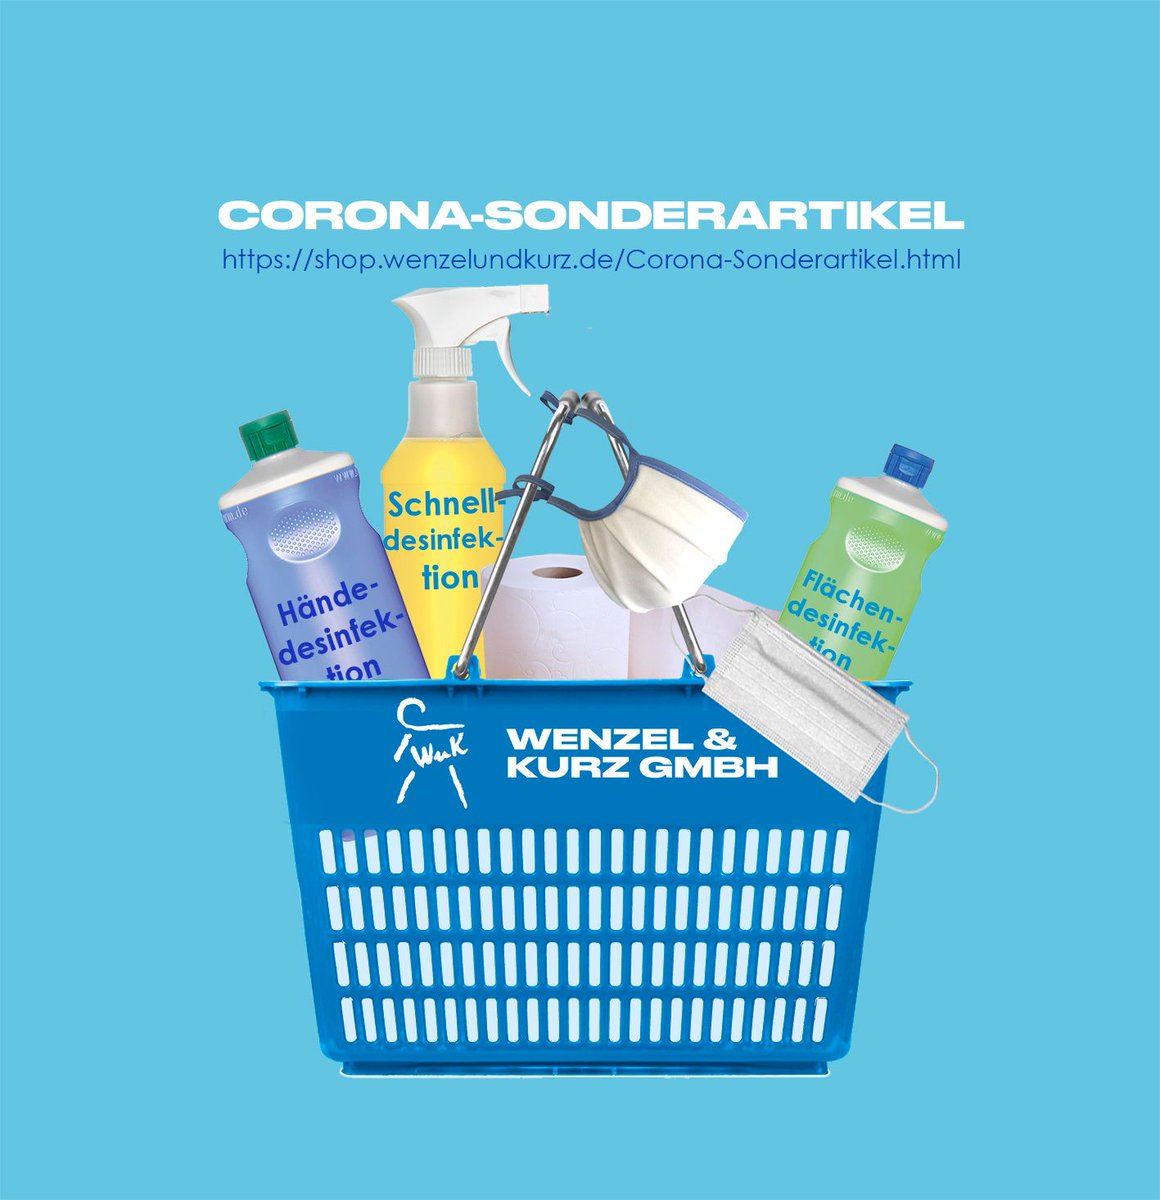 Corona-Sonderartikel: shop.wenzelundkurz.de/corona-sondera… 😷 
#werbung #täglichneu #reinschauenlohntsich #b2b #händedesinfektion #flächendesinfektion #mundnasenschutz #waschmittel #tücher #wipes #wenzelundkurz #reinigungsprodukte #hygieneartikel #sonderartikel #corona #gegencorona #helftalle